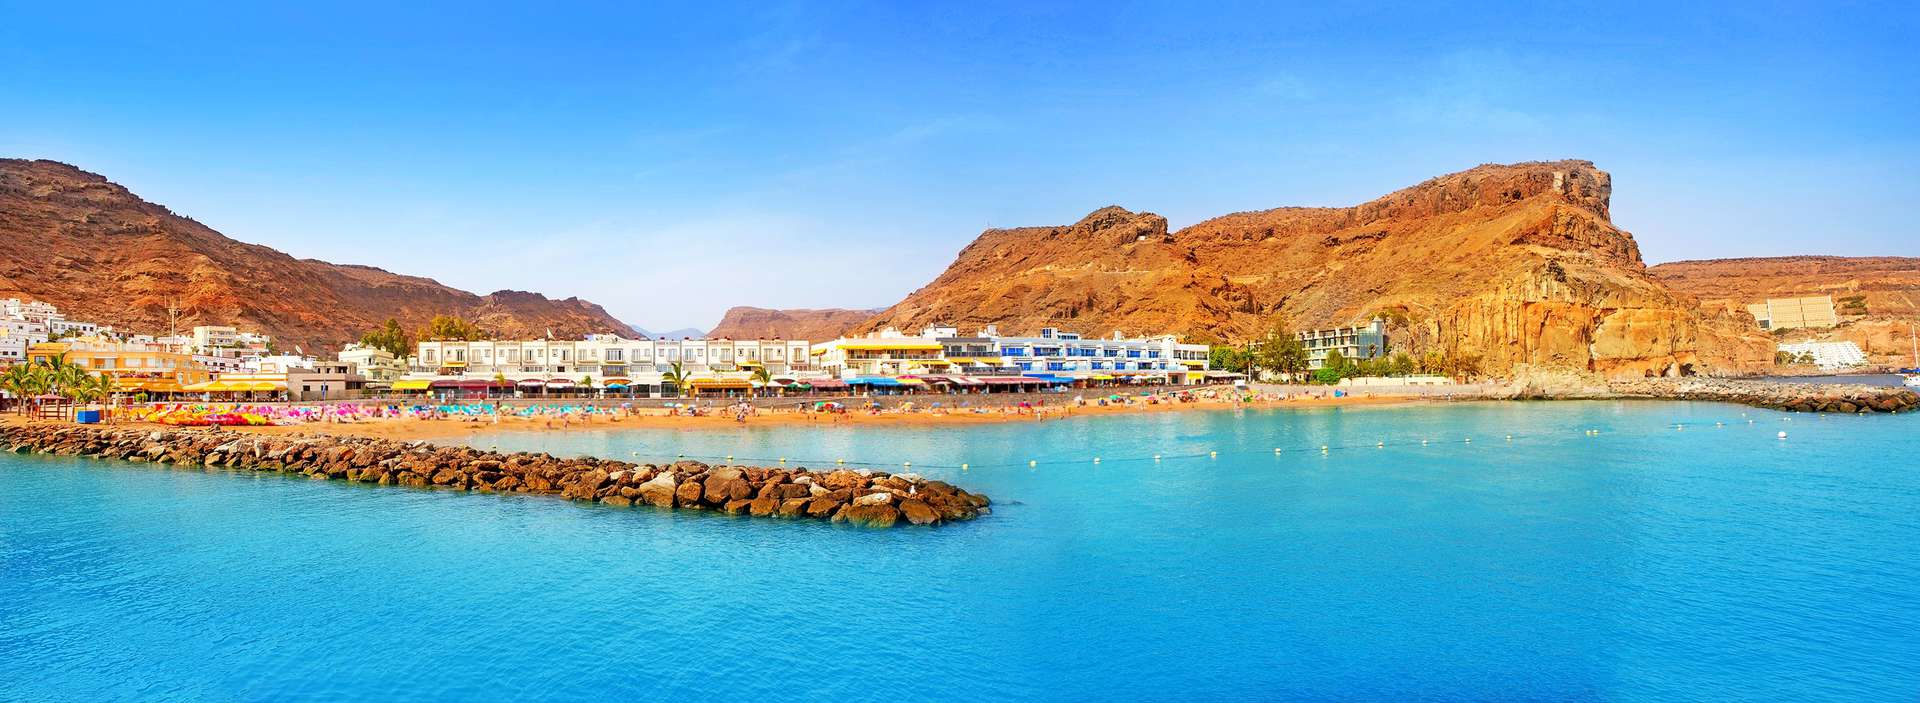 43+ Best Bild Wohnung Mieten Kanarische Inseln / 48 Best Pictures Haus Mieten Auf Gran Canaria / Wohnungen ... - Auslandsimmobilien > spanien > kanarische inseln.